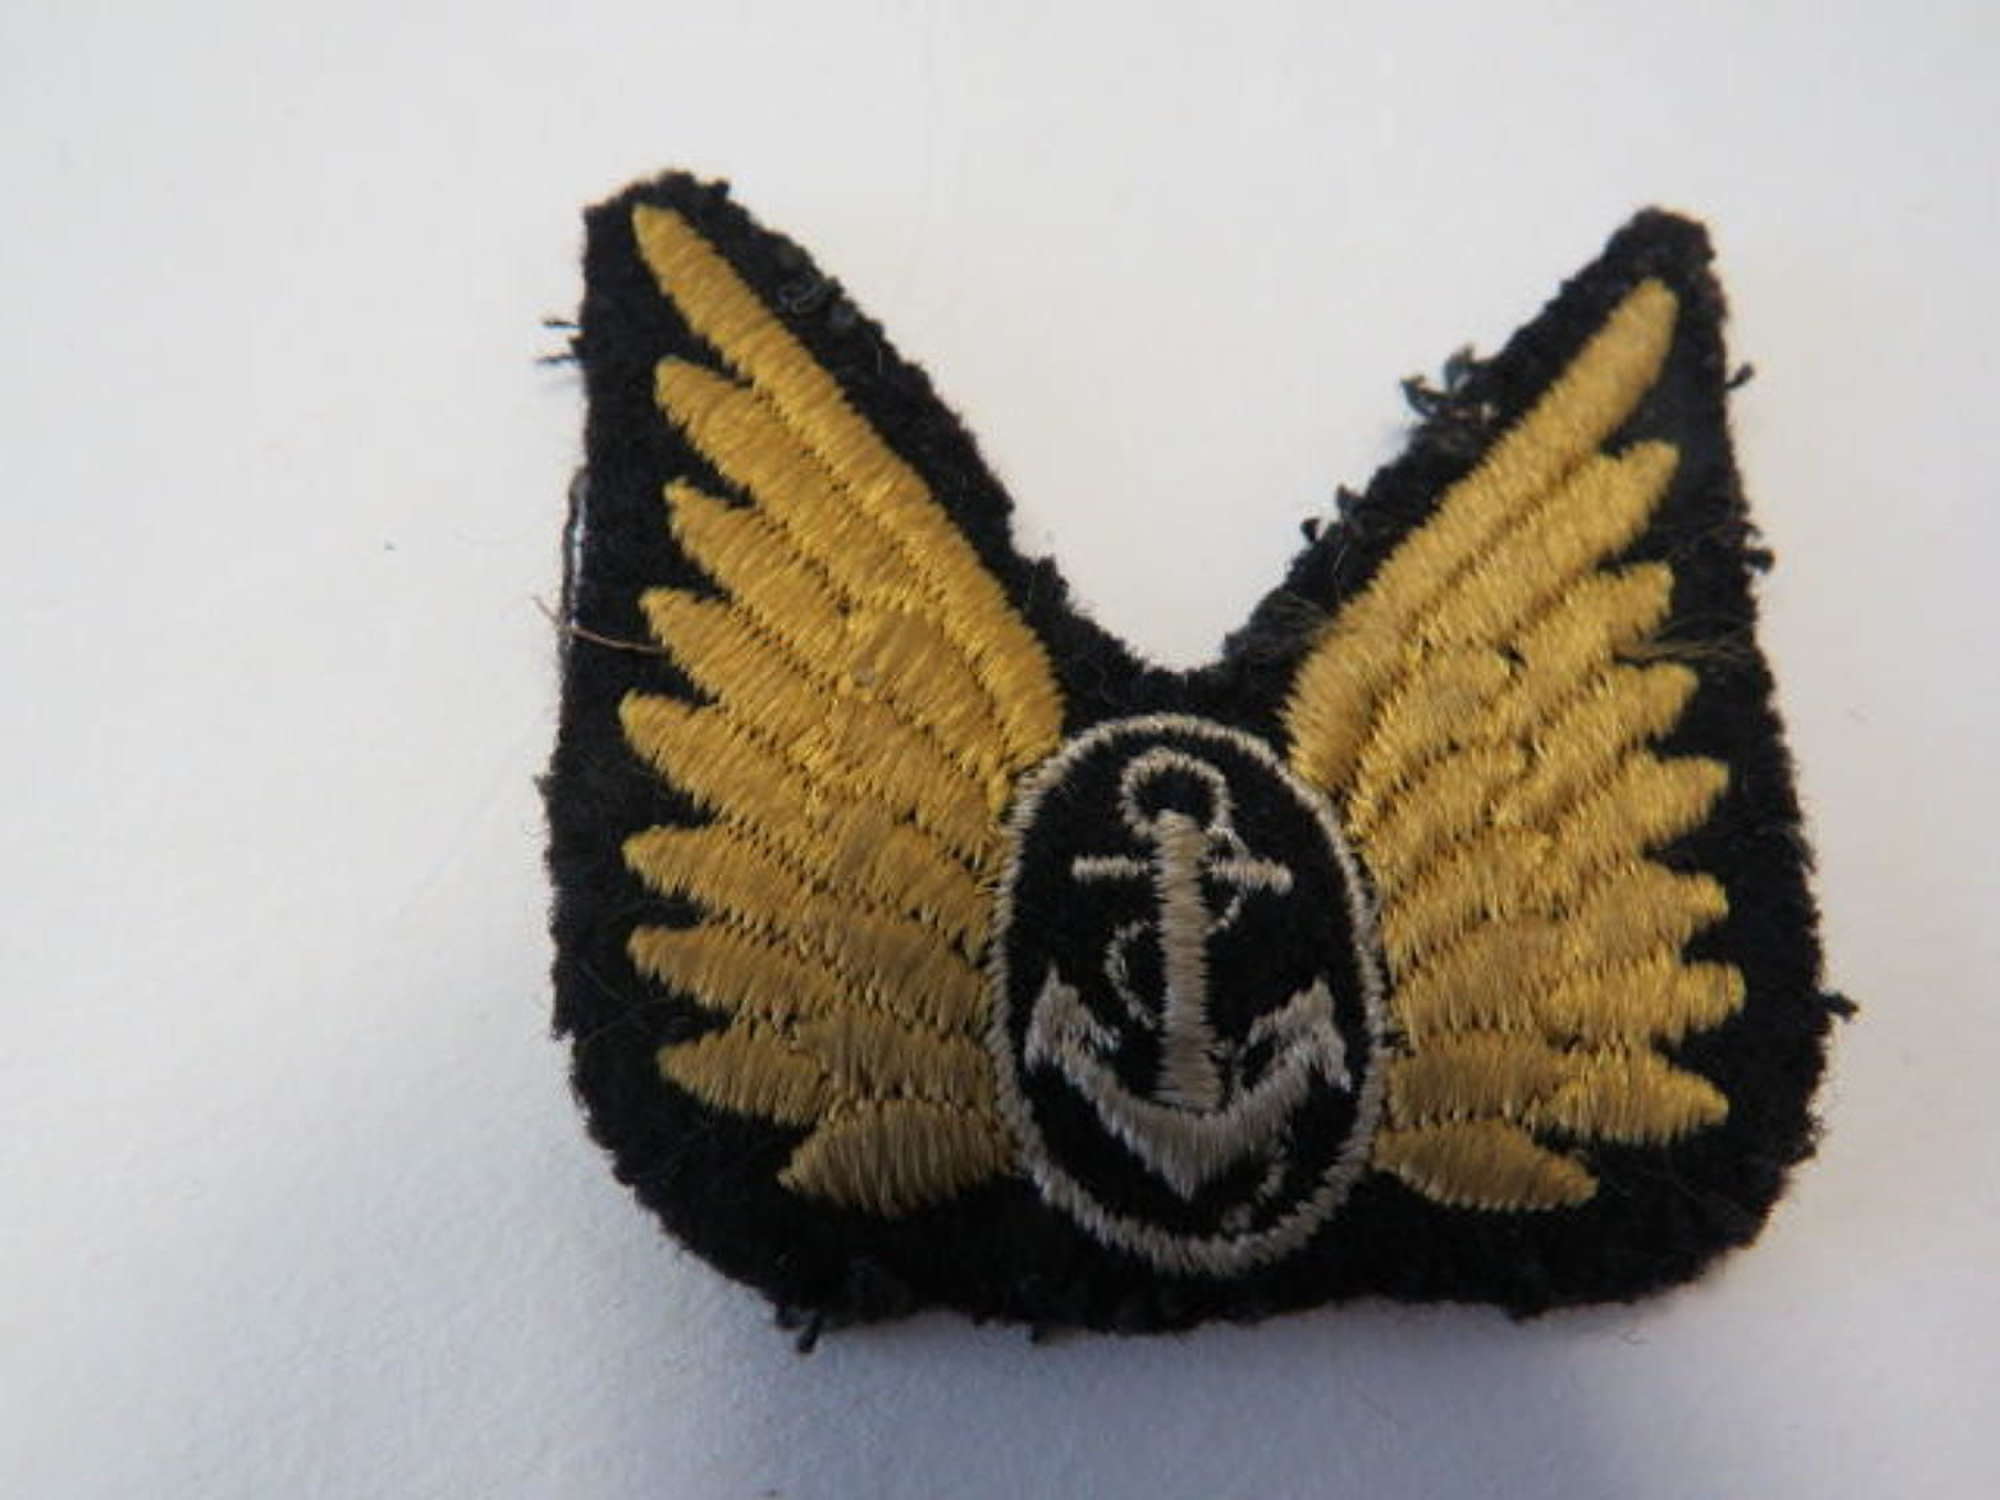 Fleet Air Arm Observer's Wings